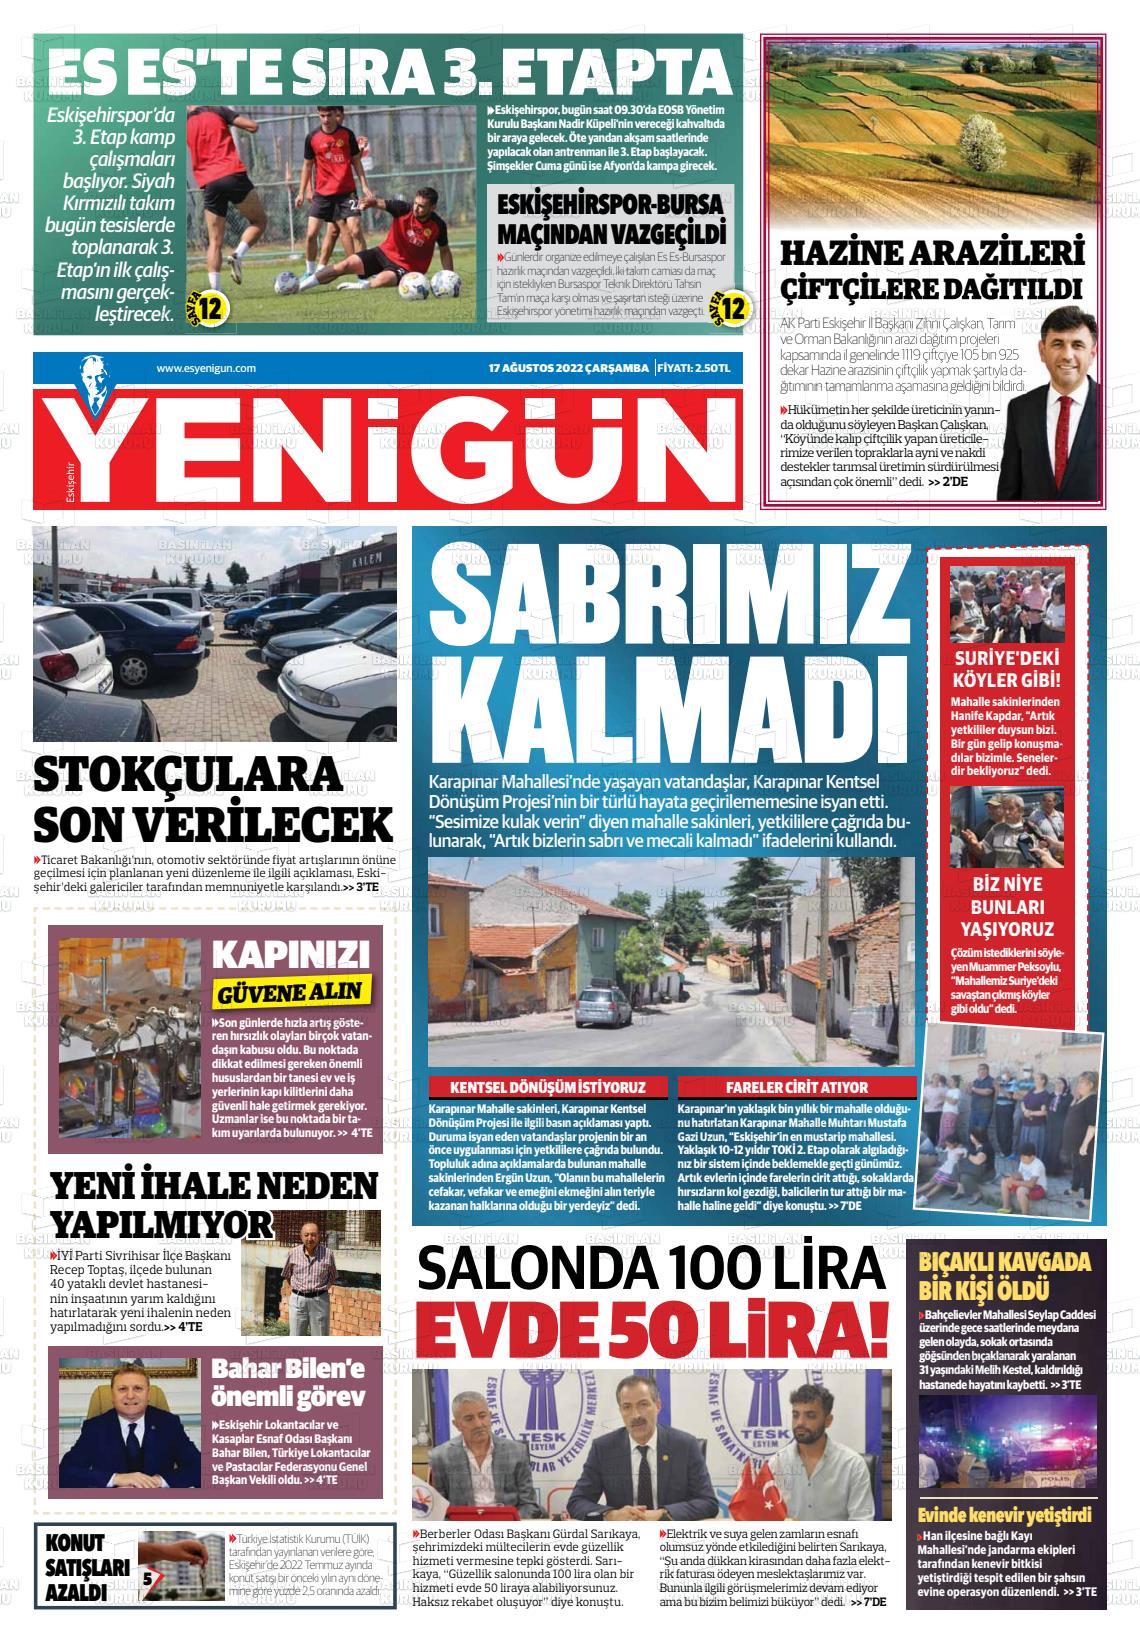 17 Ağustos 2022 Eskişehir Yeni Gün Gazete Manşeti